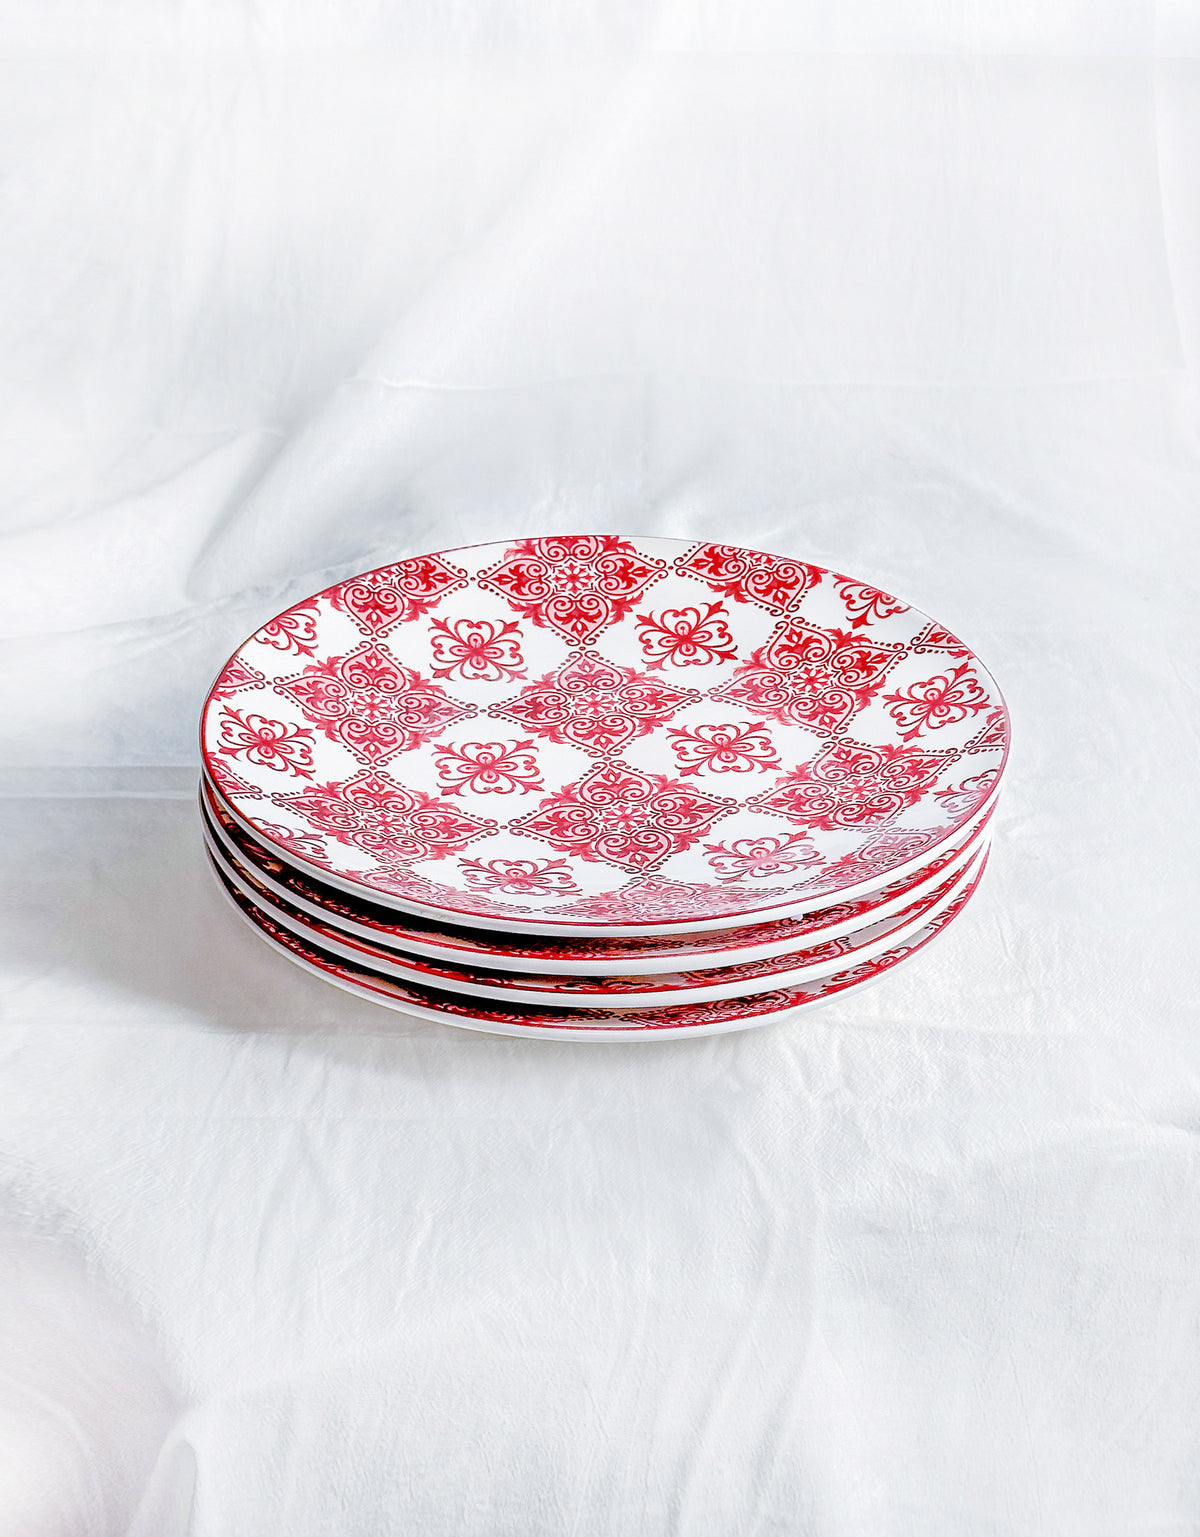 Red Marrakesh Tile Dinner Plates, Set of 4